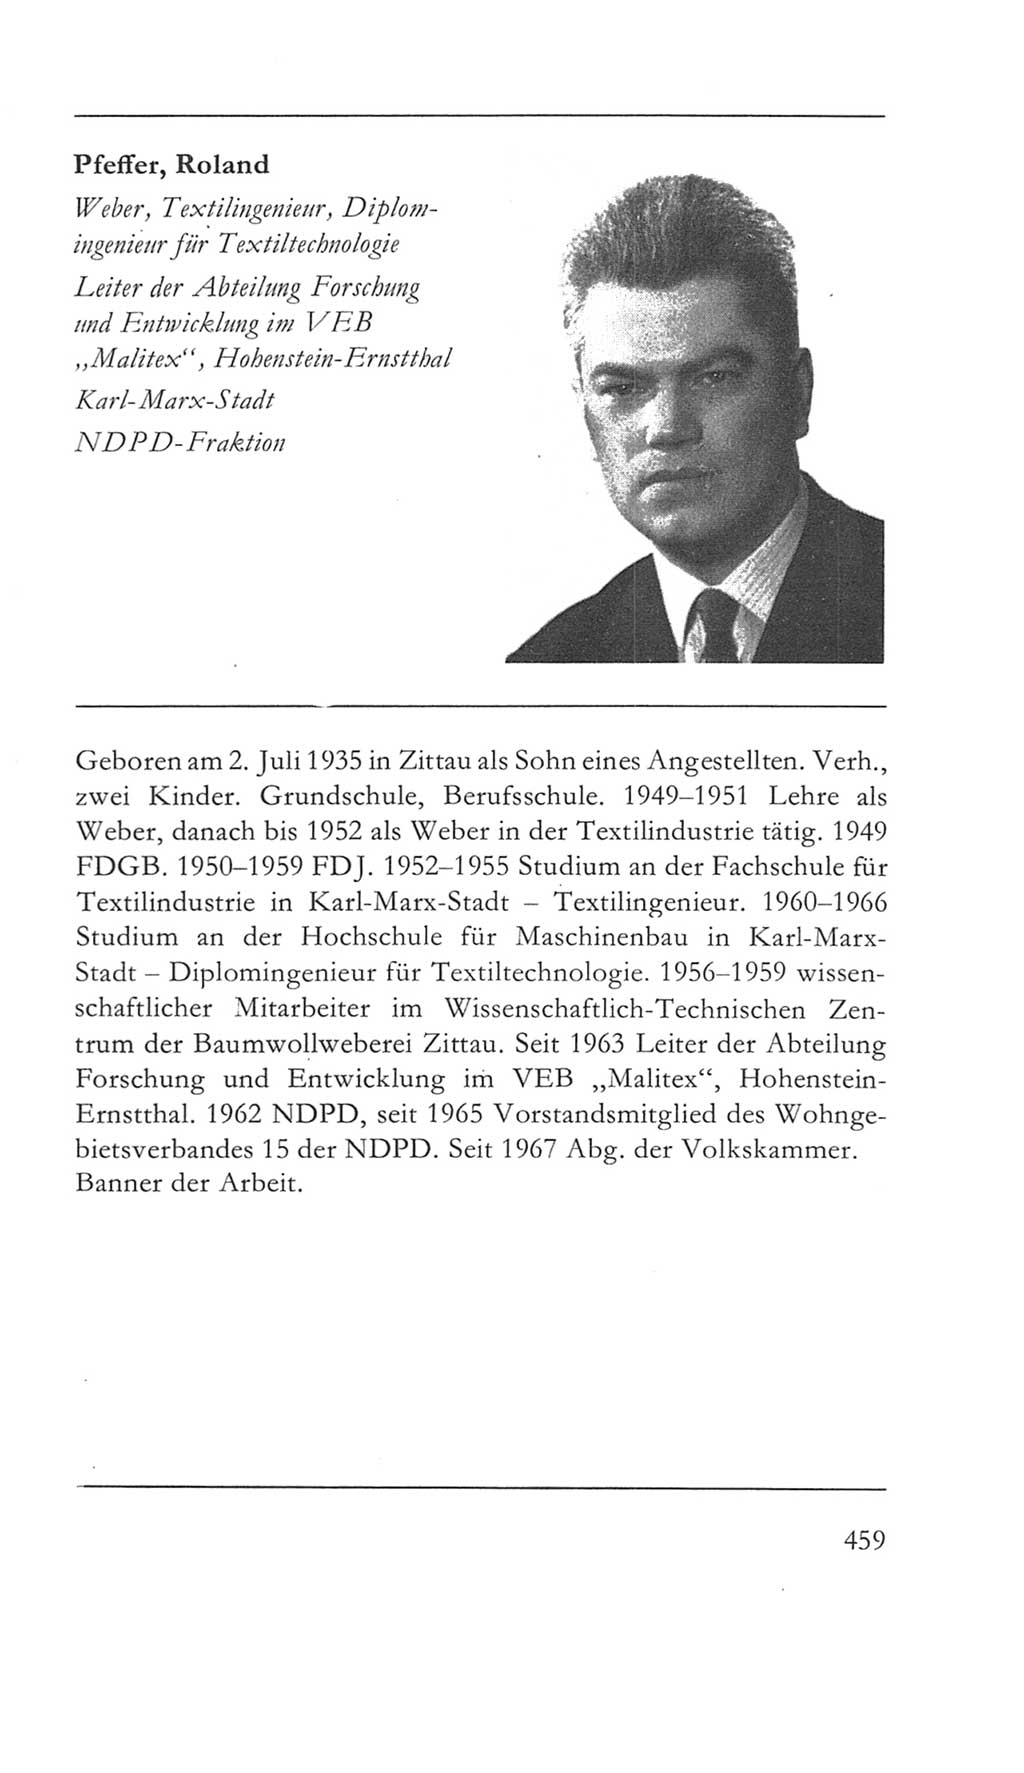 Volkskammer (VK) der Deutschen Demokratischen Republik (DDR) 5. Wahlperiode 1967-1971, Seite 459 (VK. DDR 5. WP. 1967-1971, S. 459)